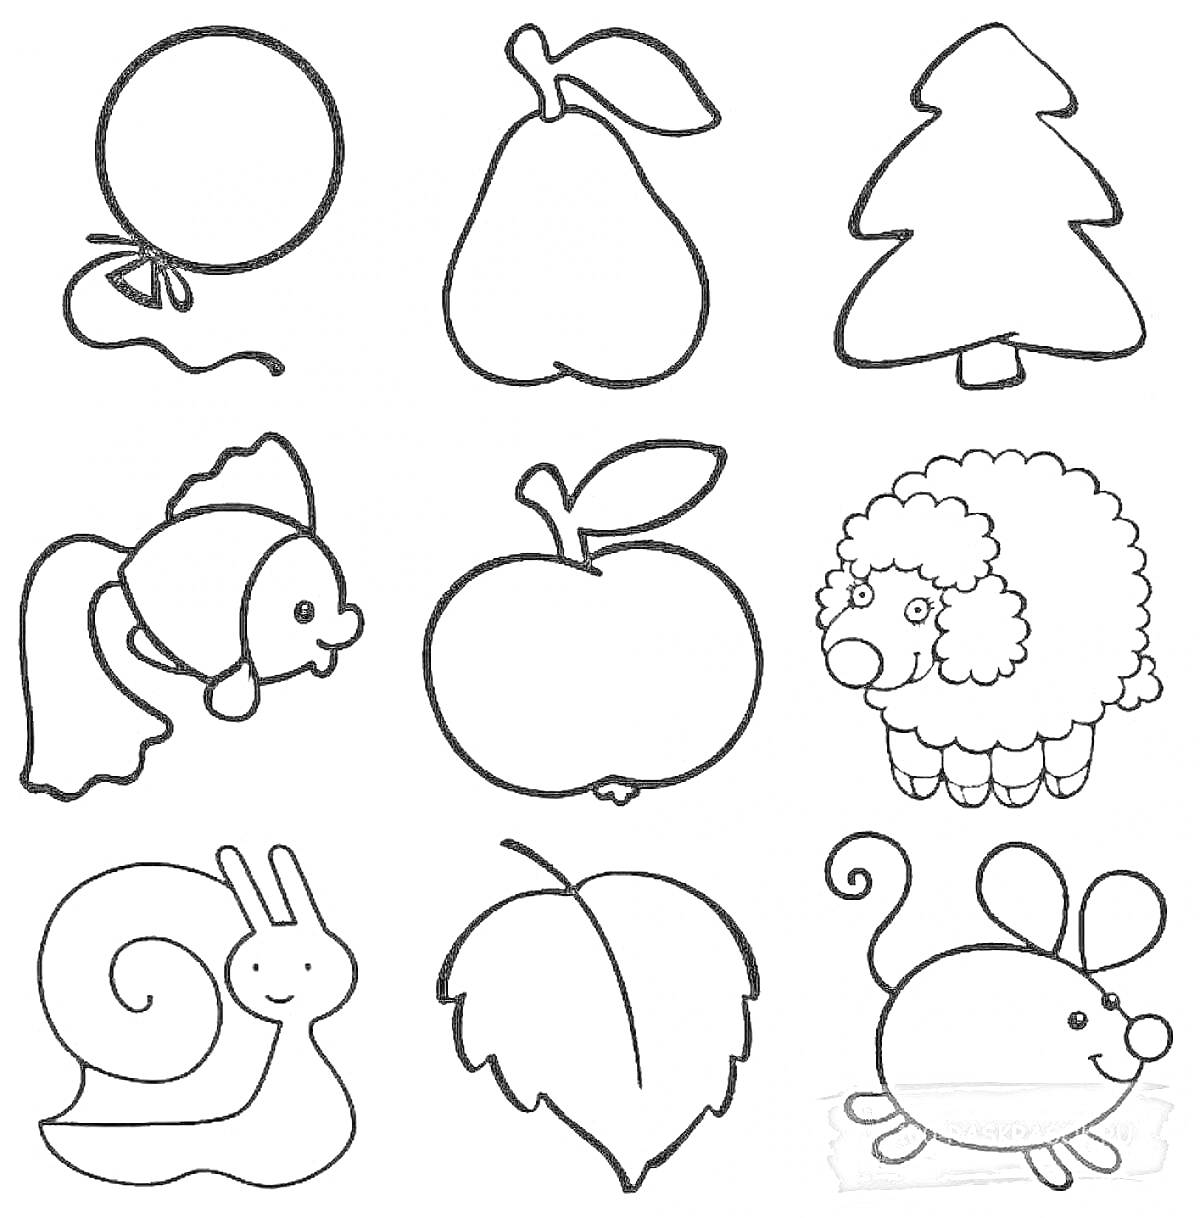 Раскраска воздушный шарик, груша, ёлка, рыбка, яблоко, овечка, улитка, листок, мышка